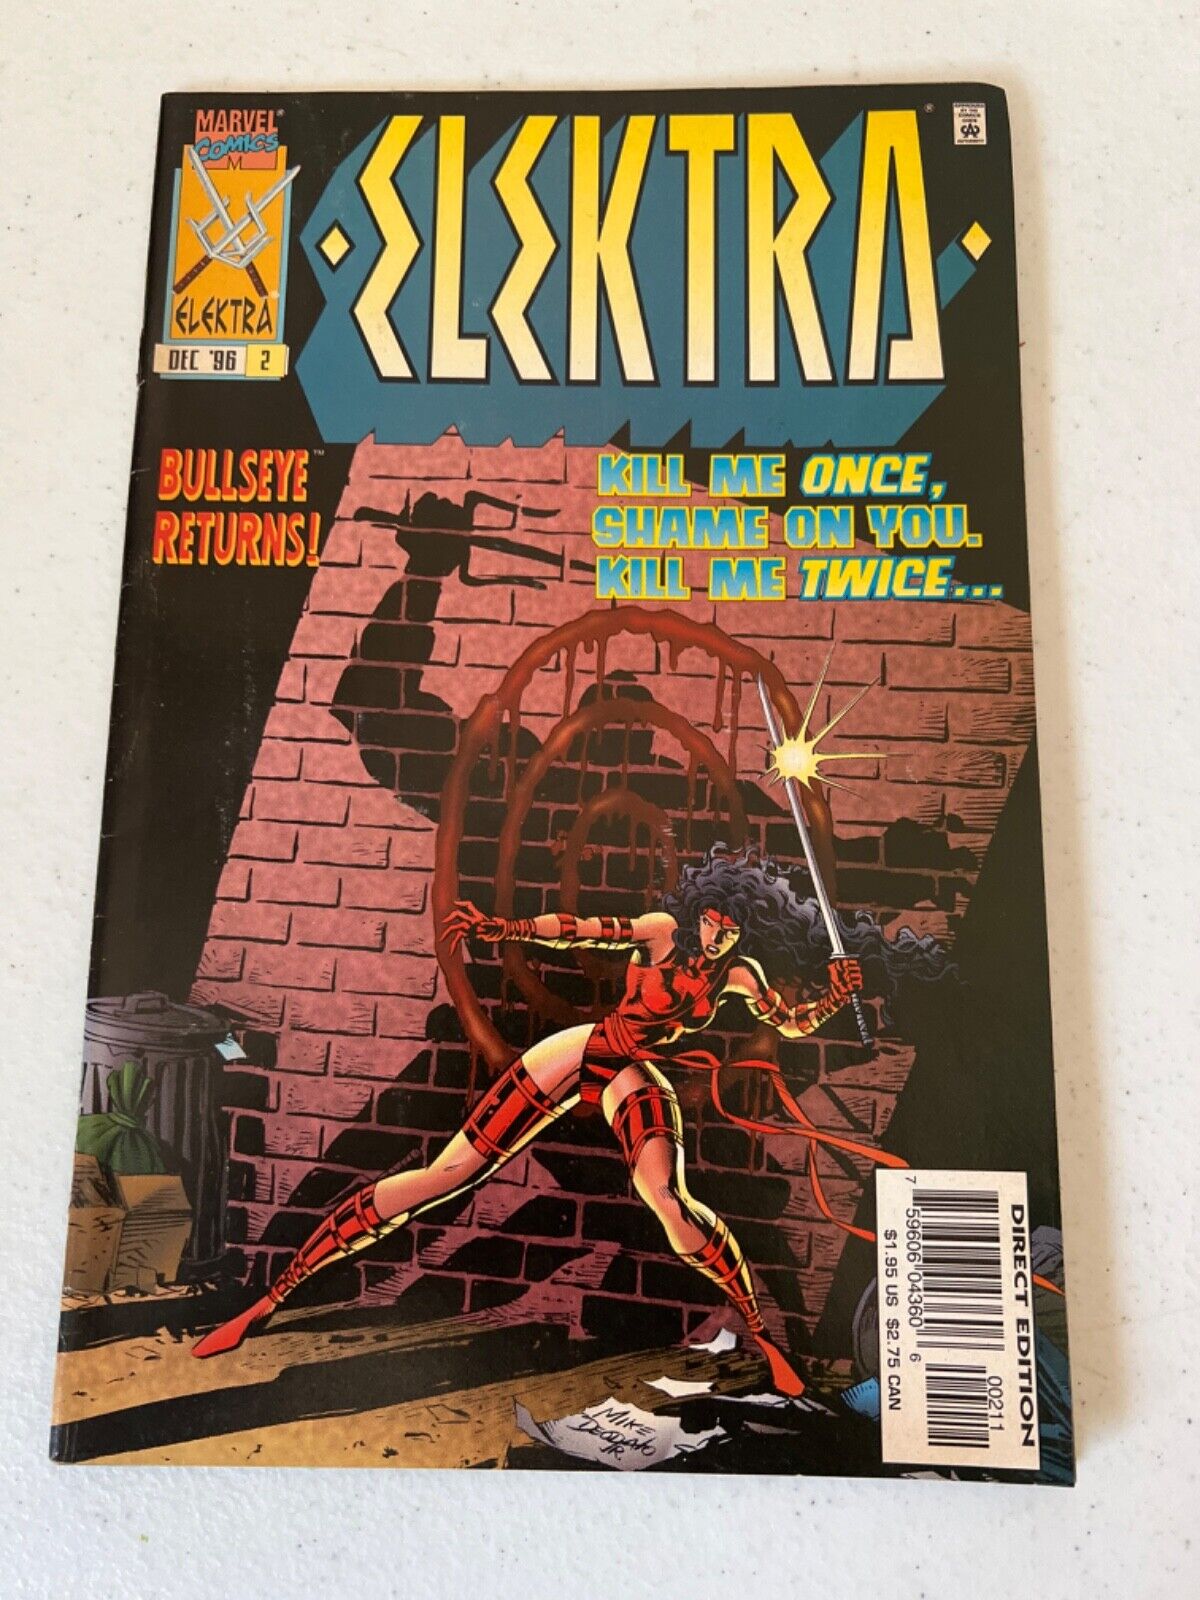 Elektra Vol 1 No 2 Dec 1996 Marvel Comic Book Bullseye Returns